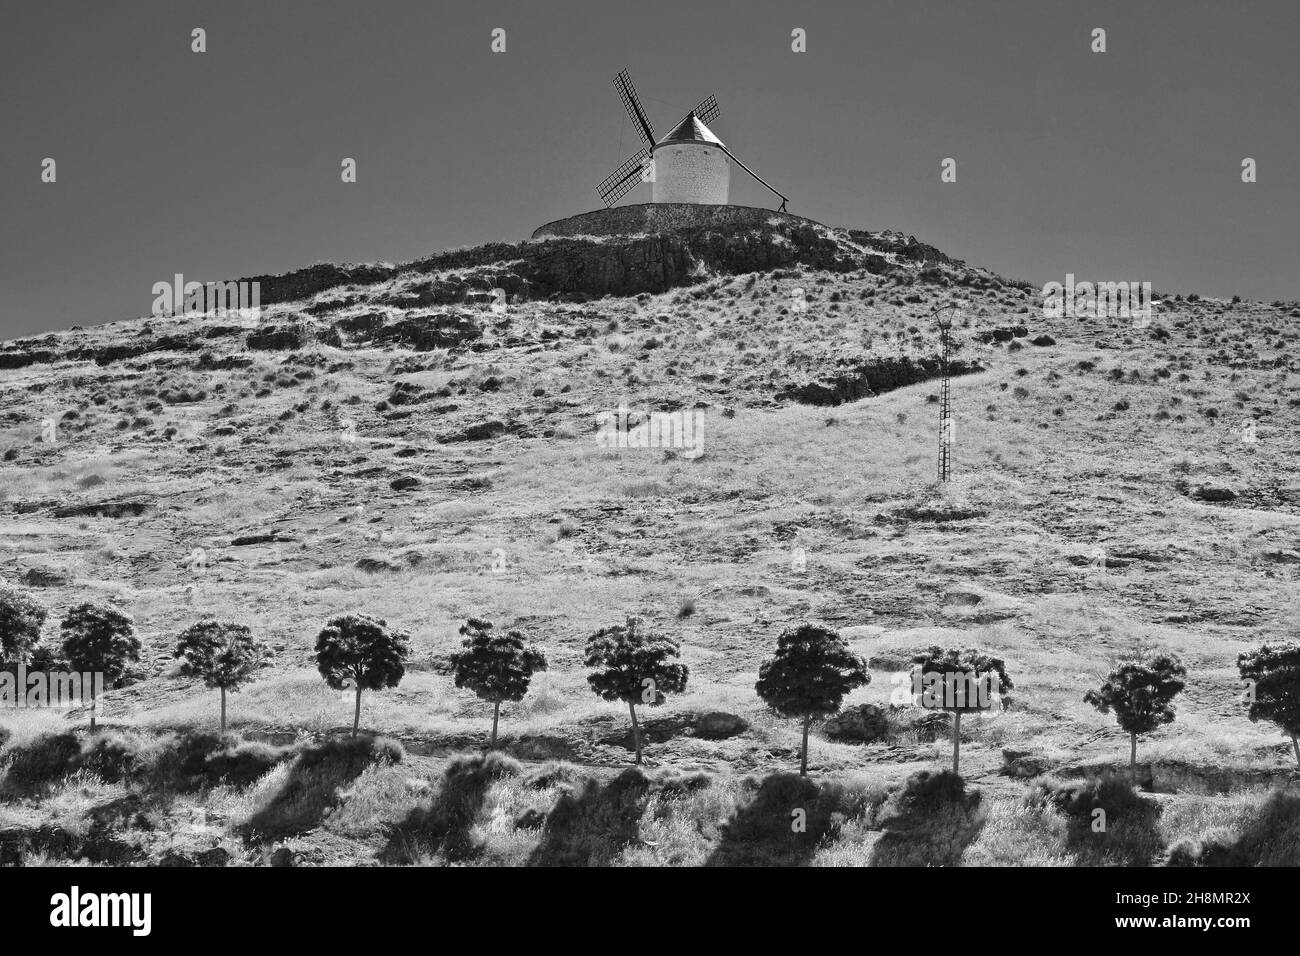 Rangée d'arbres avec moulin à vent de Consuegra, route Don Quichotte, province de Tolède, région de Castilla-la Mancha, Espagne Banque D'Images